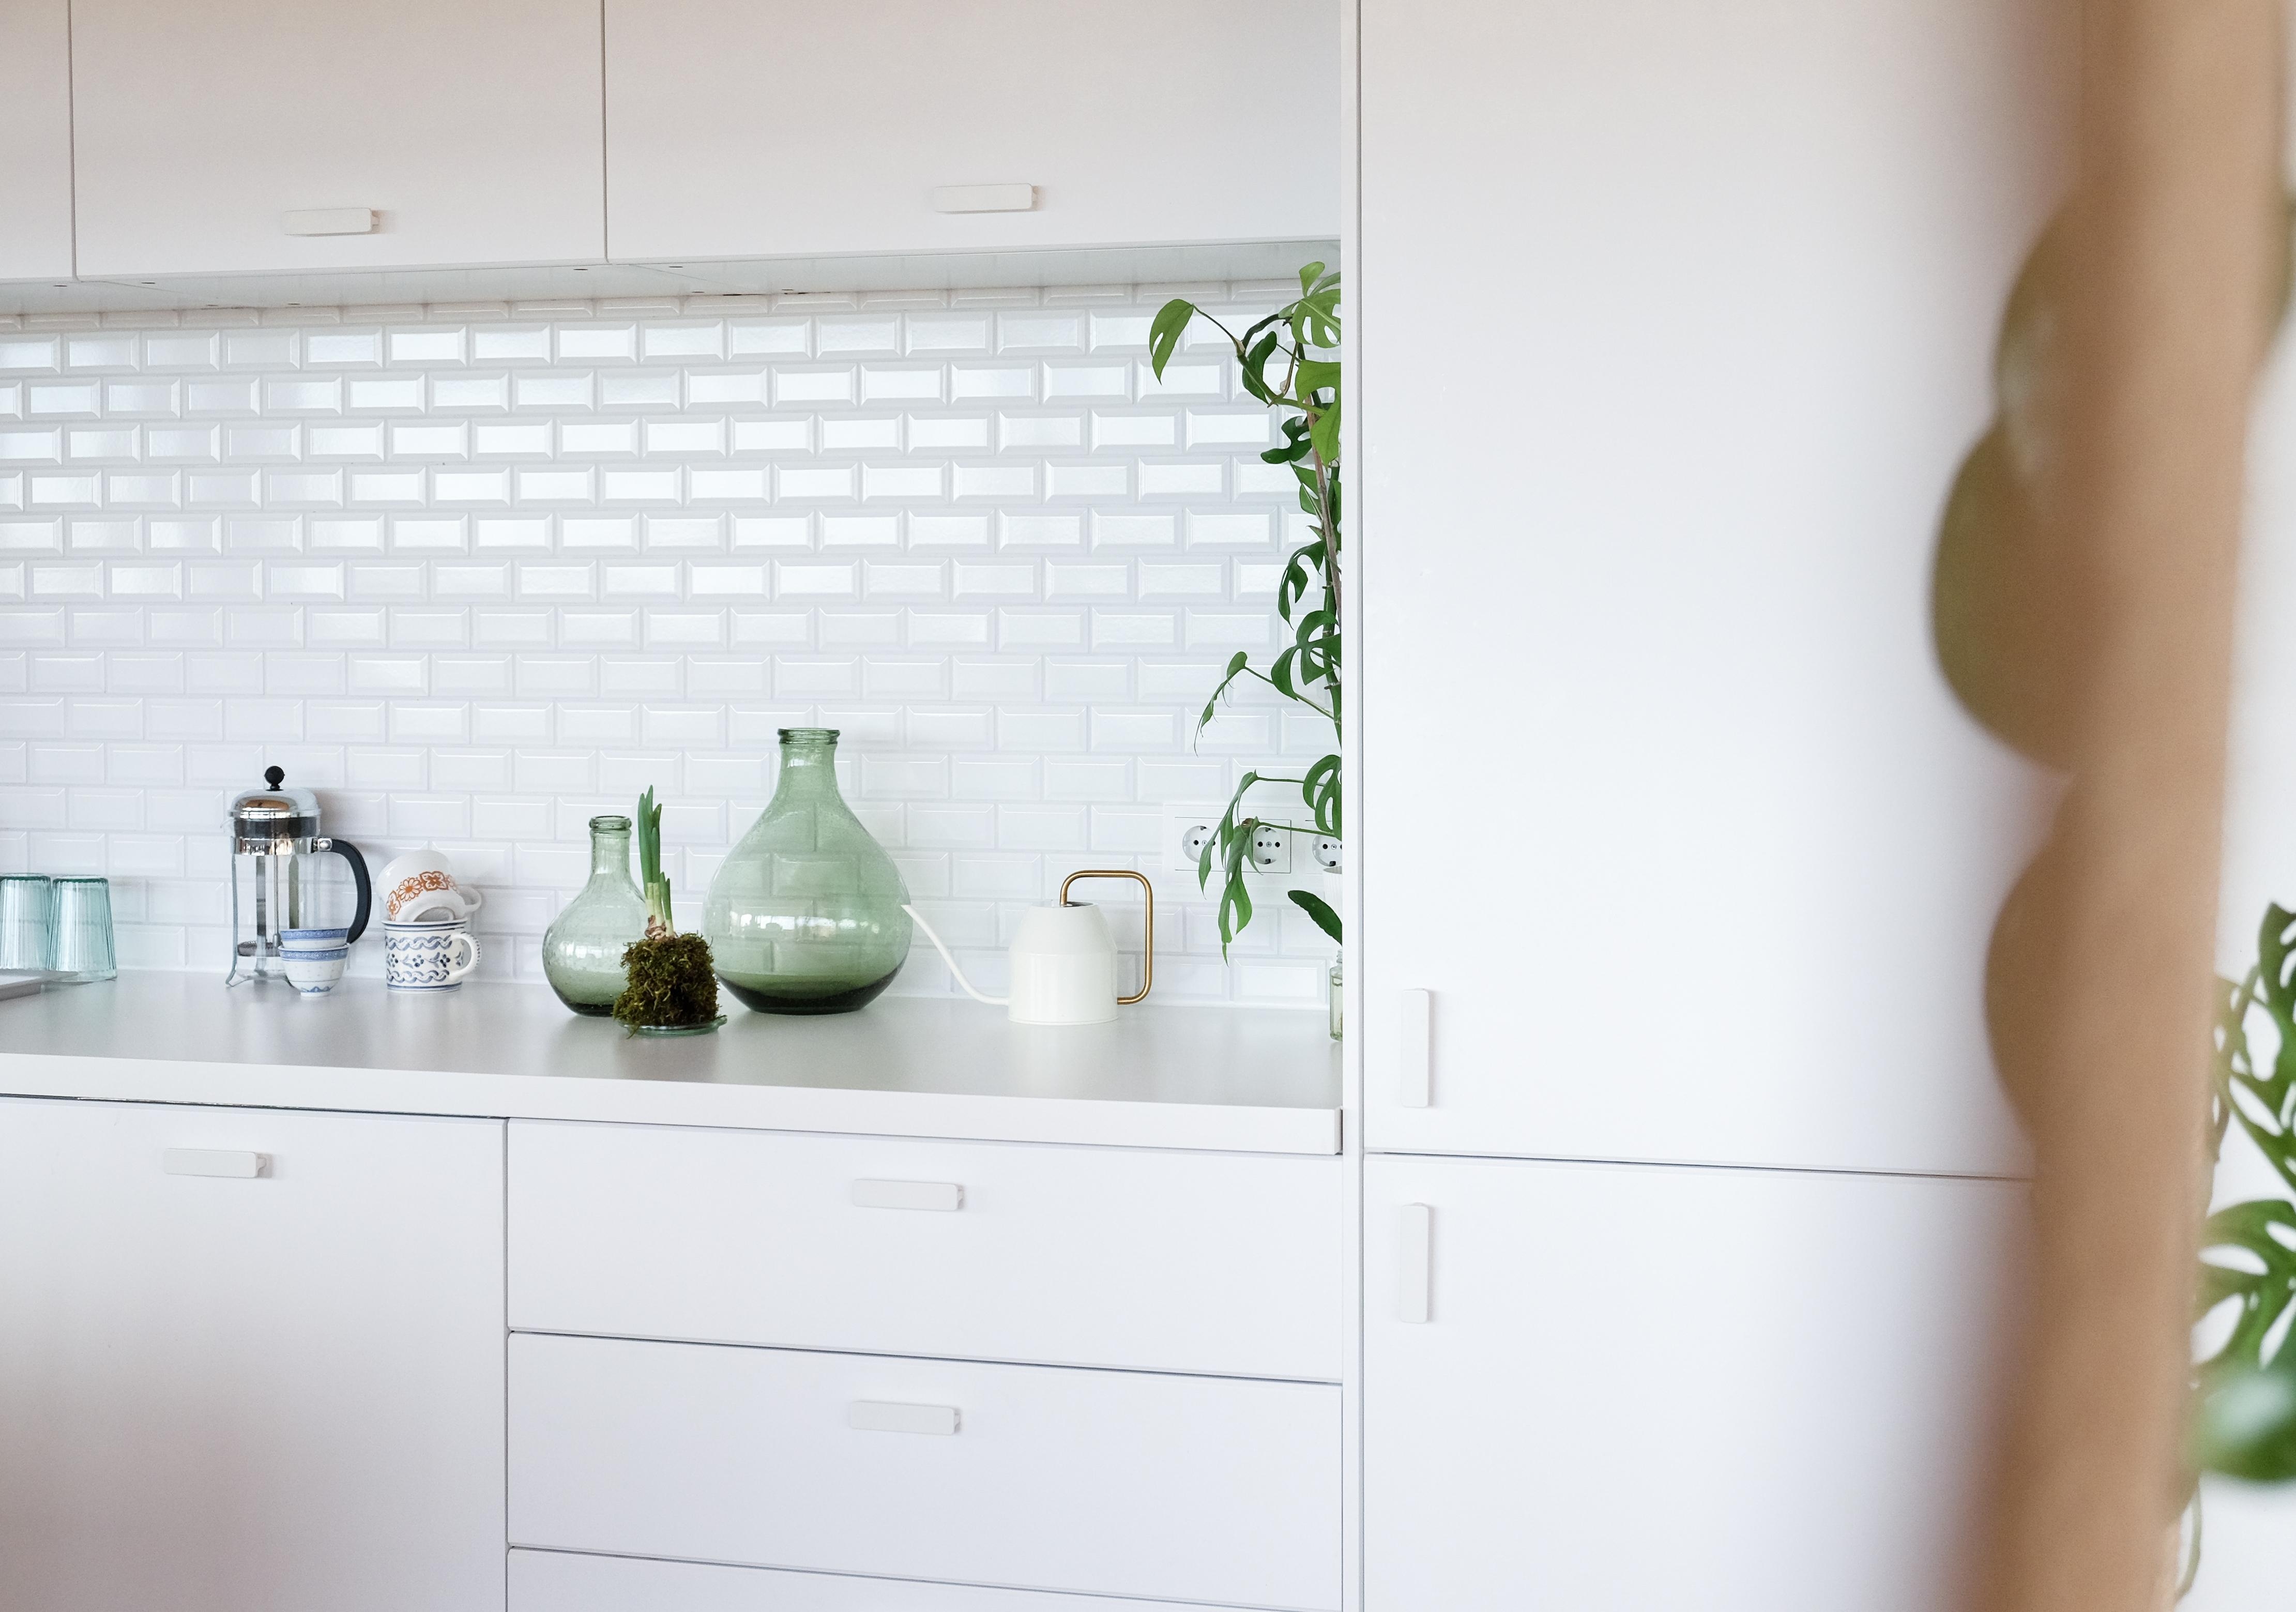 Unsere Küche, ganz in weiß mit Metrofliesen. #livingchallenge #küche #couchliebt